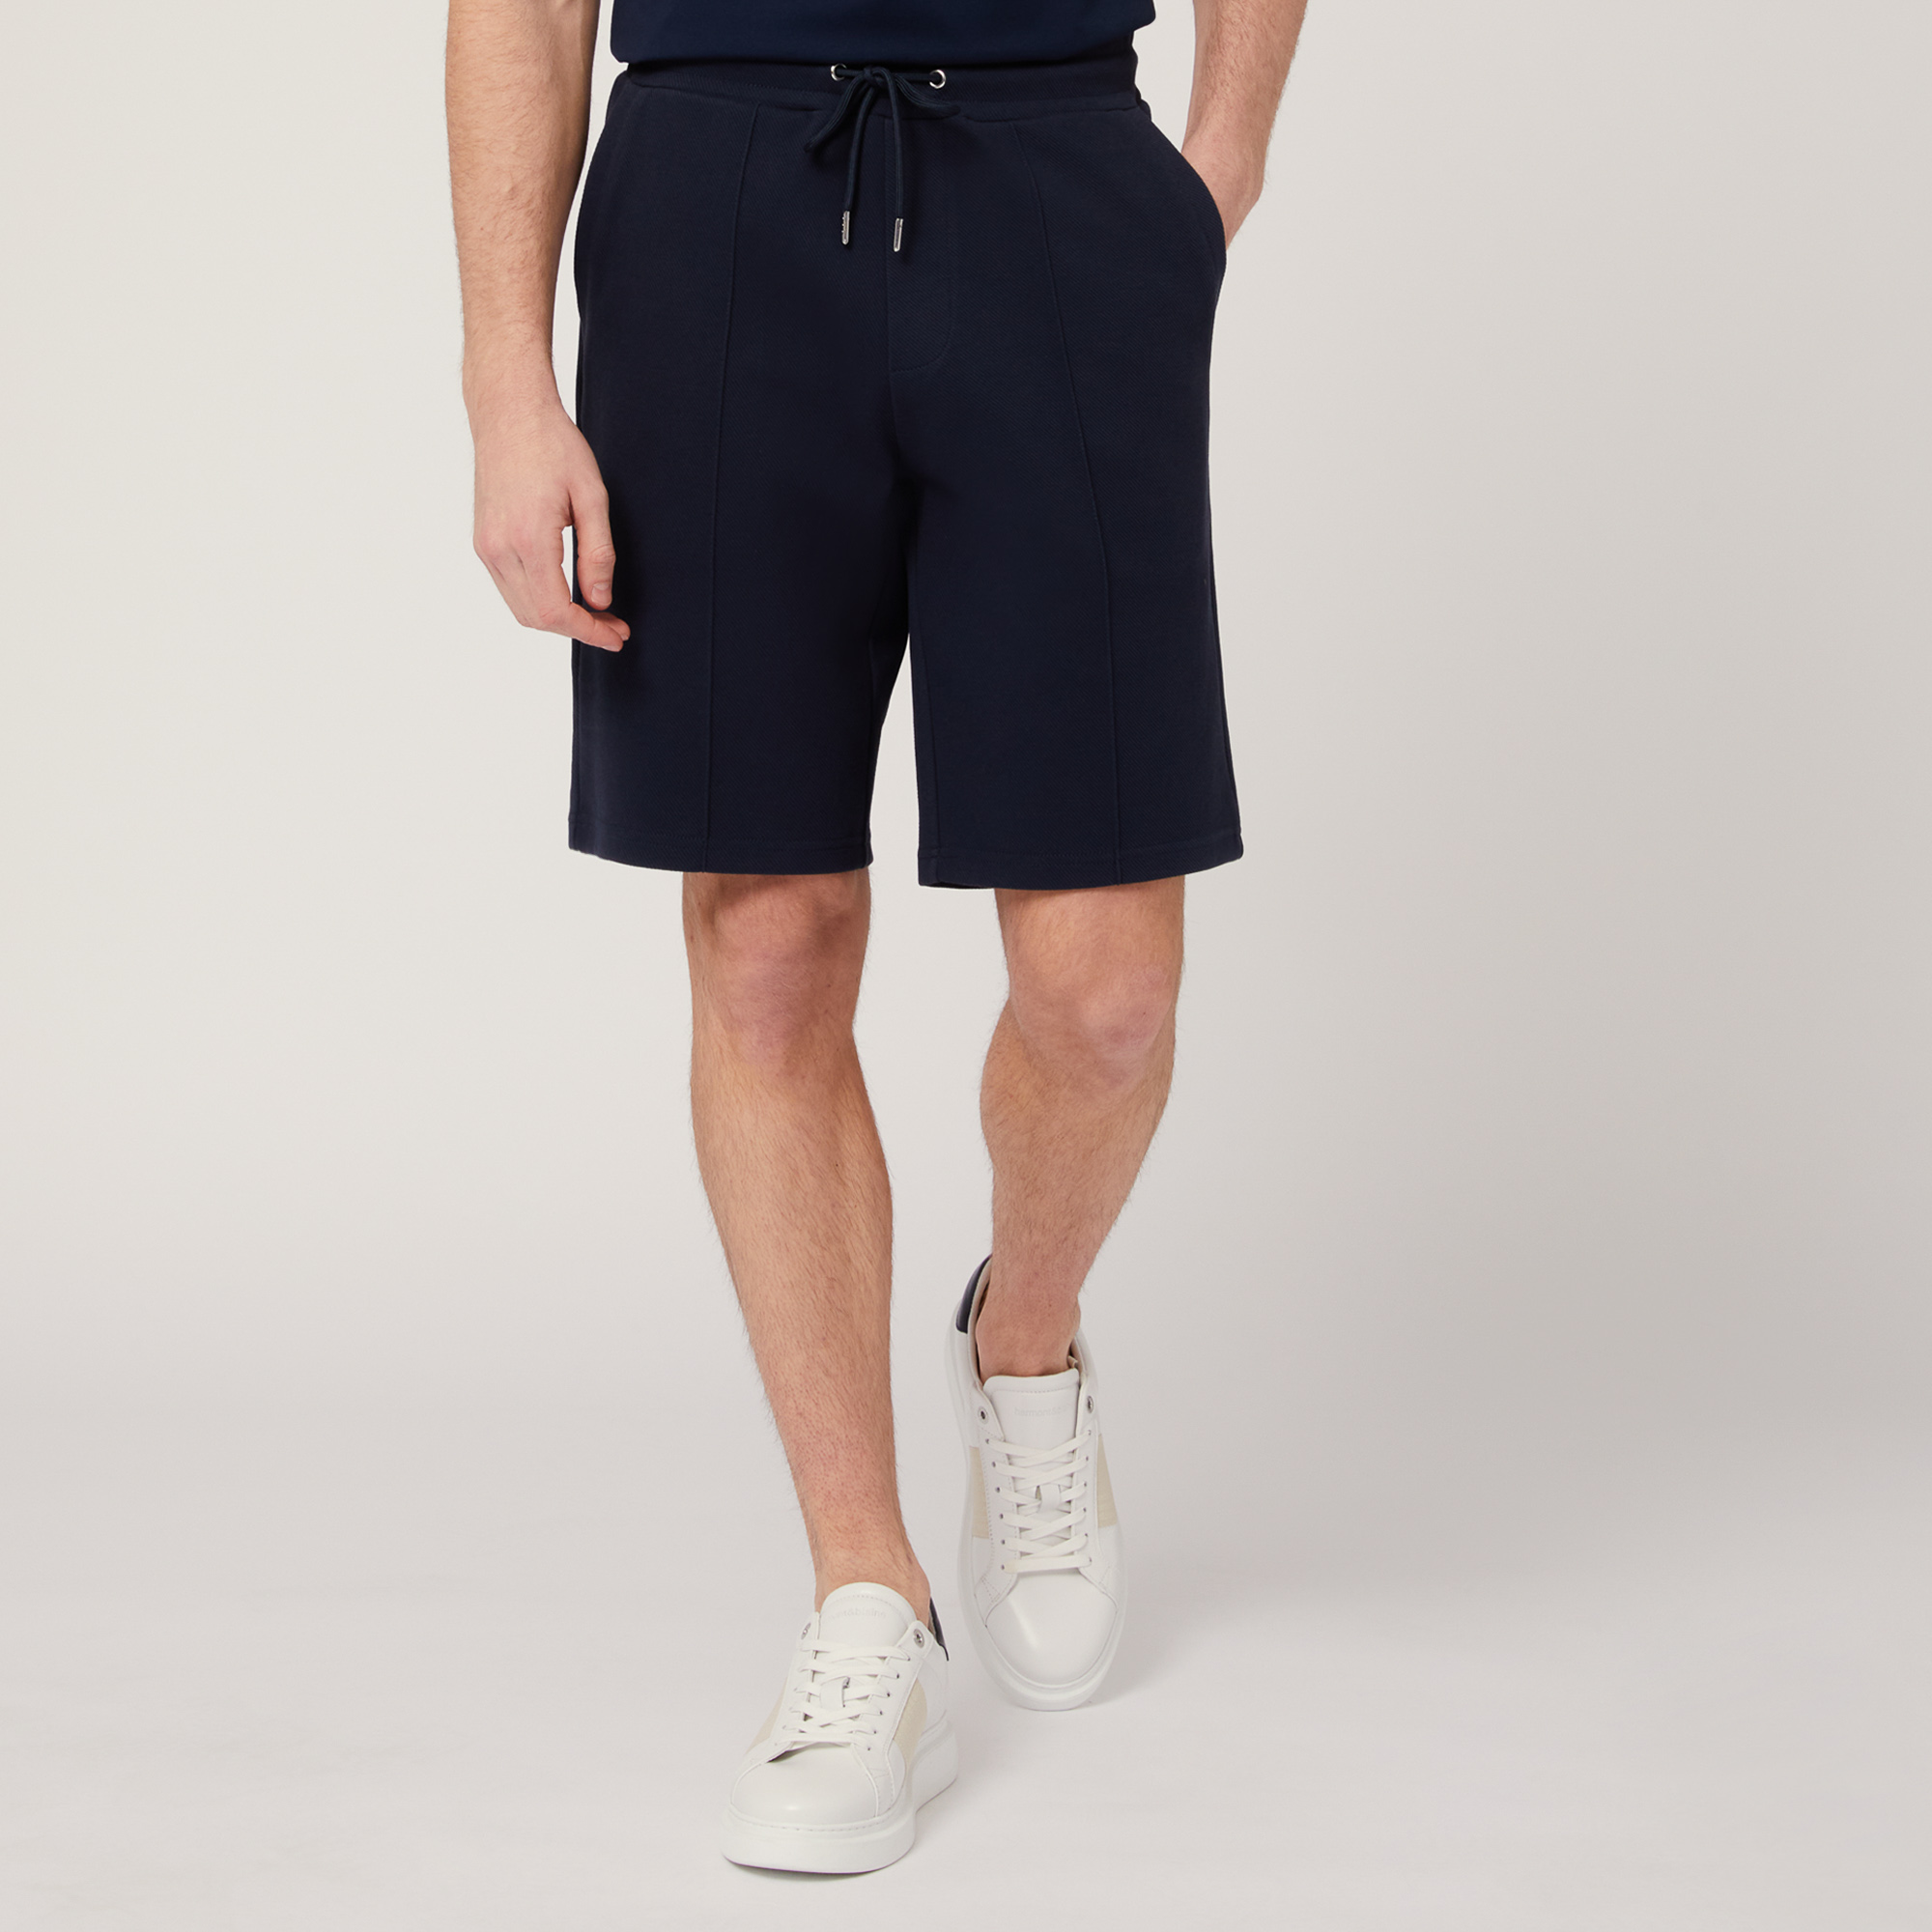 Shorts aus Stretch-Baumwolle mit Tasche hinten, Blau, large image number 0